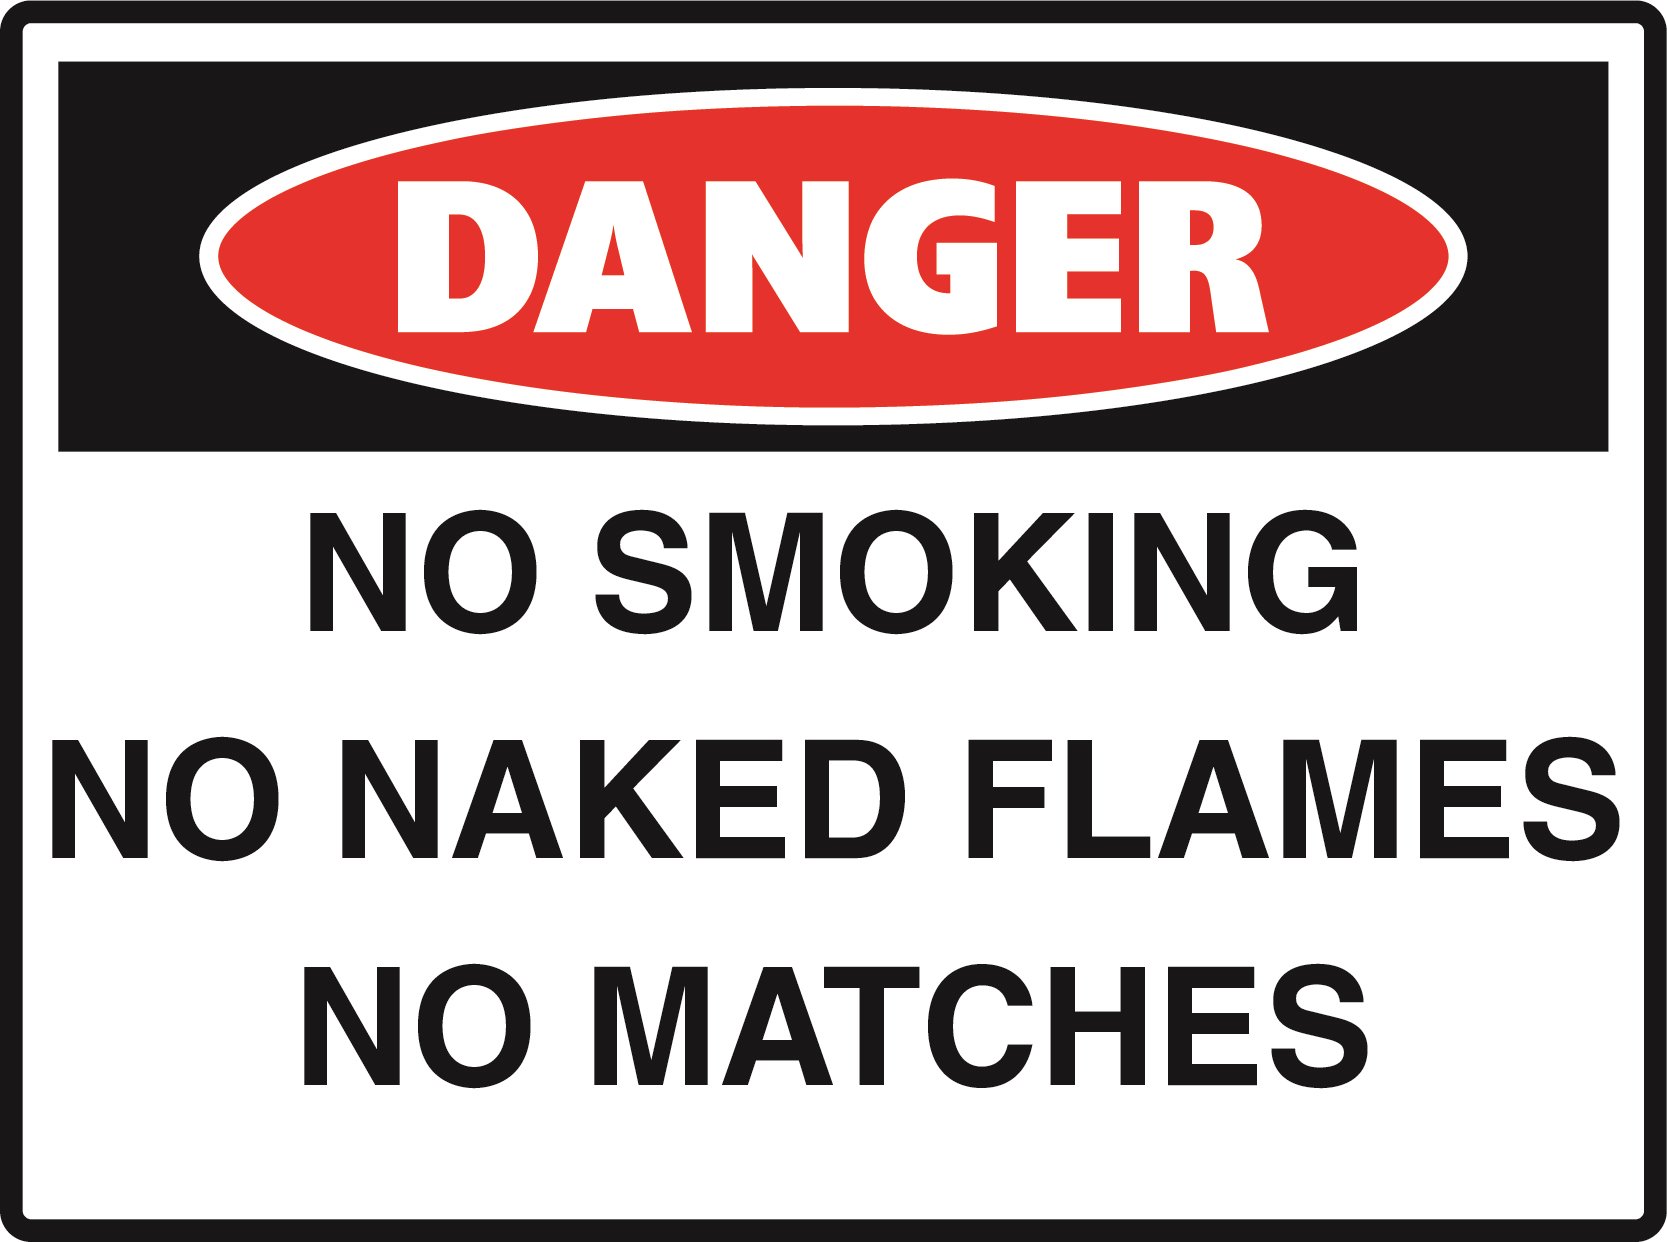 Danger - No Smoking, No Naked Flames, No Matches - 600x450